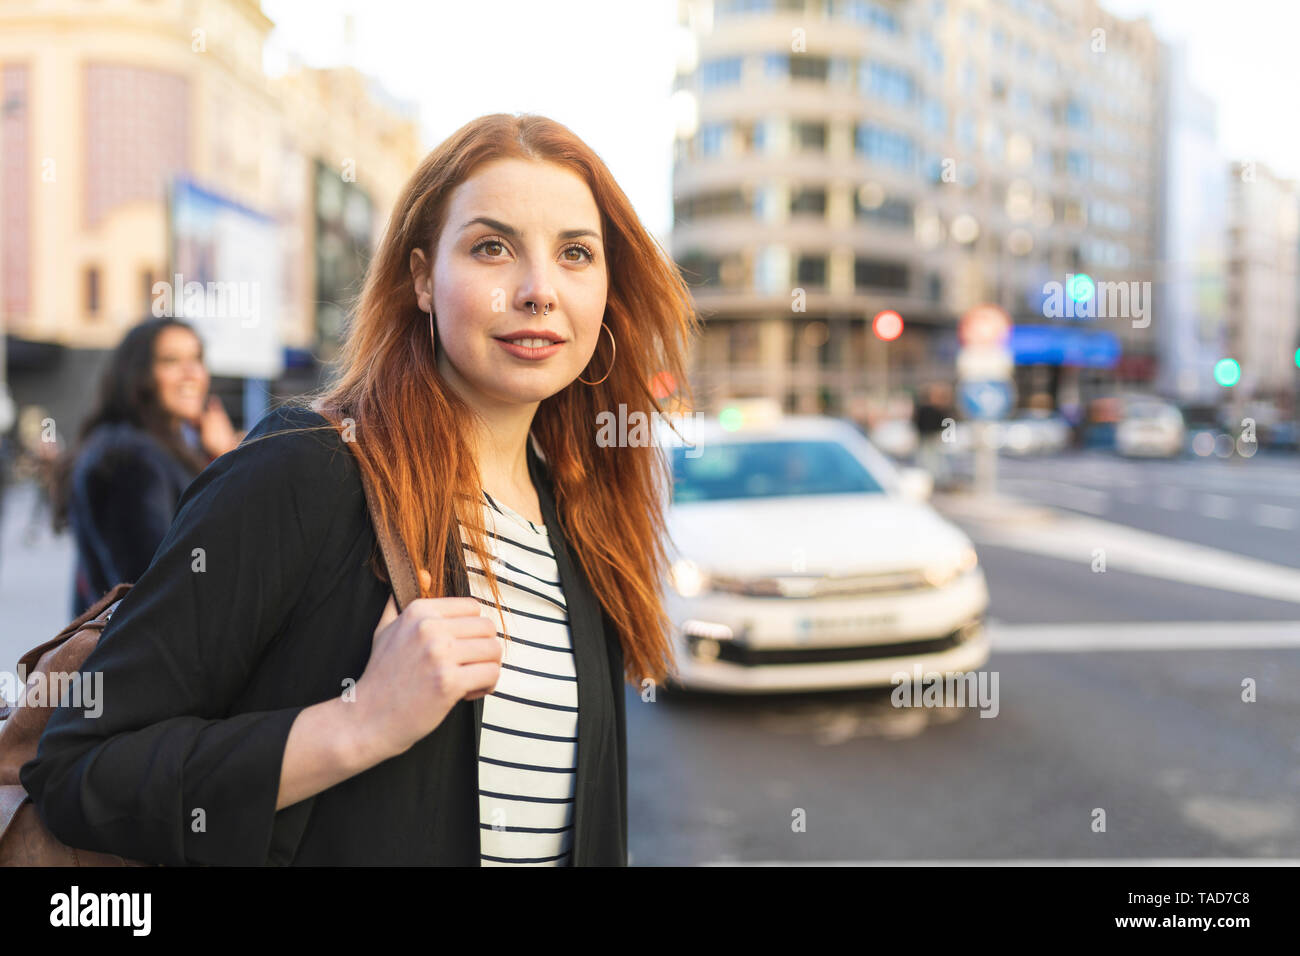 Porträt der rothaarige junge Frau mit nasenpiercing in der Stadt Stockfoto